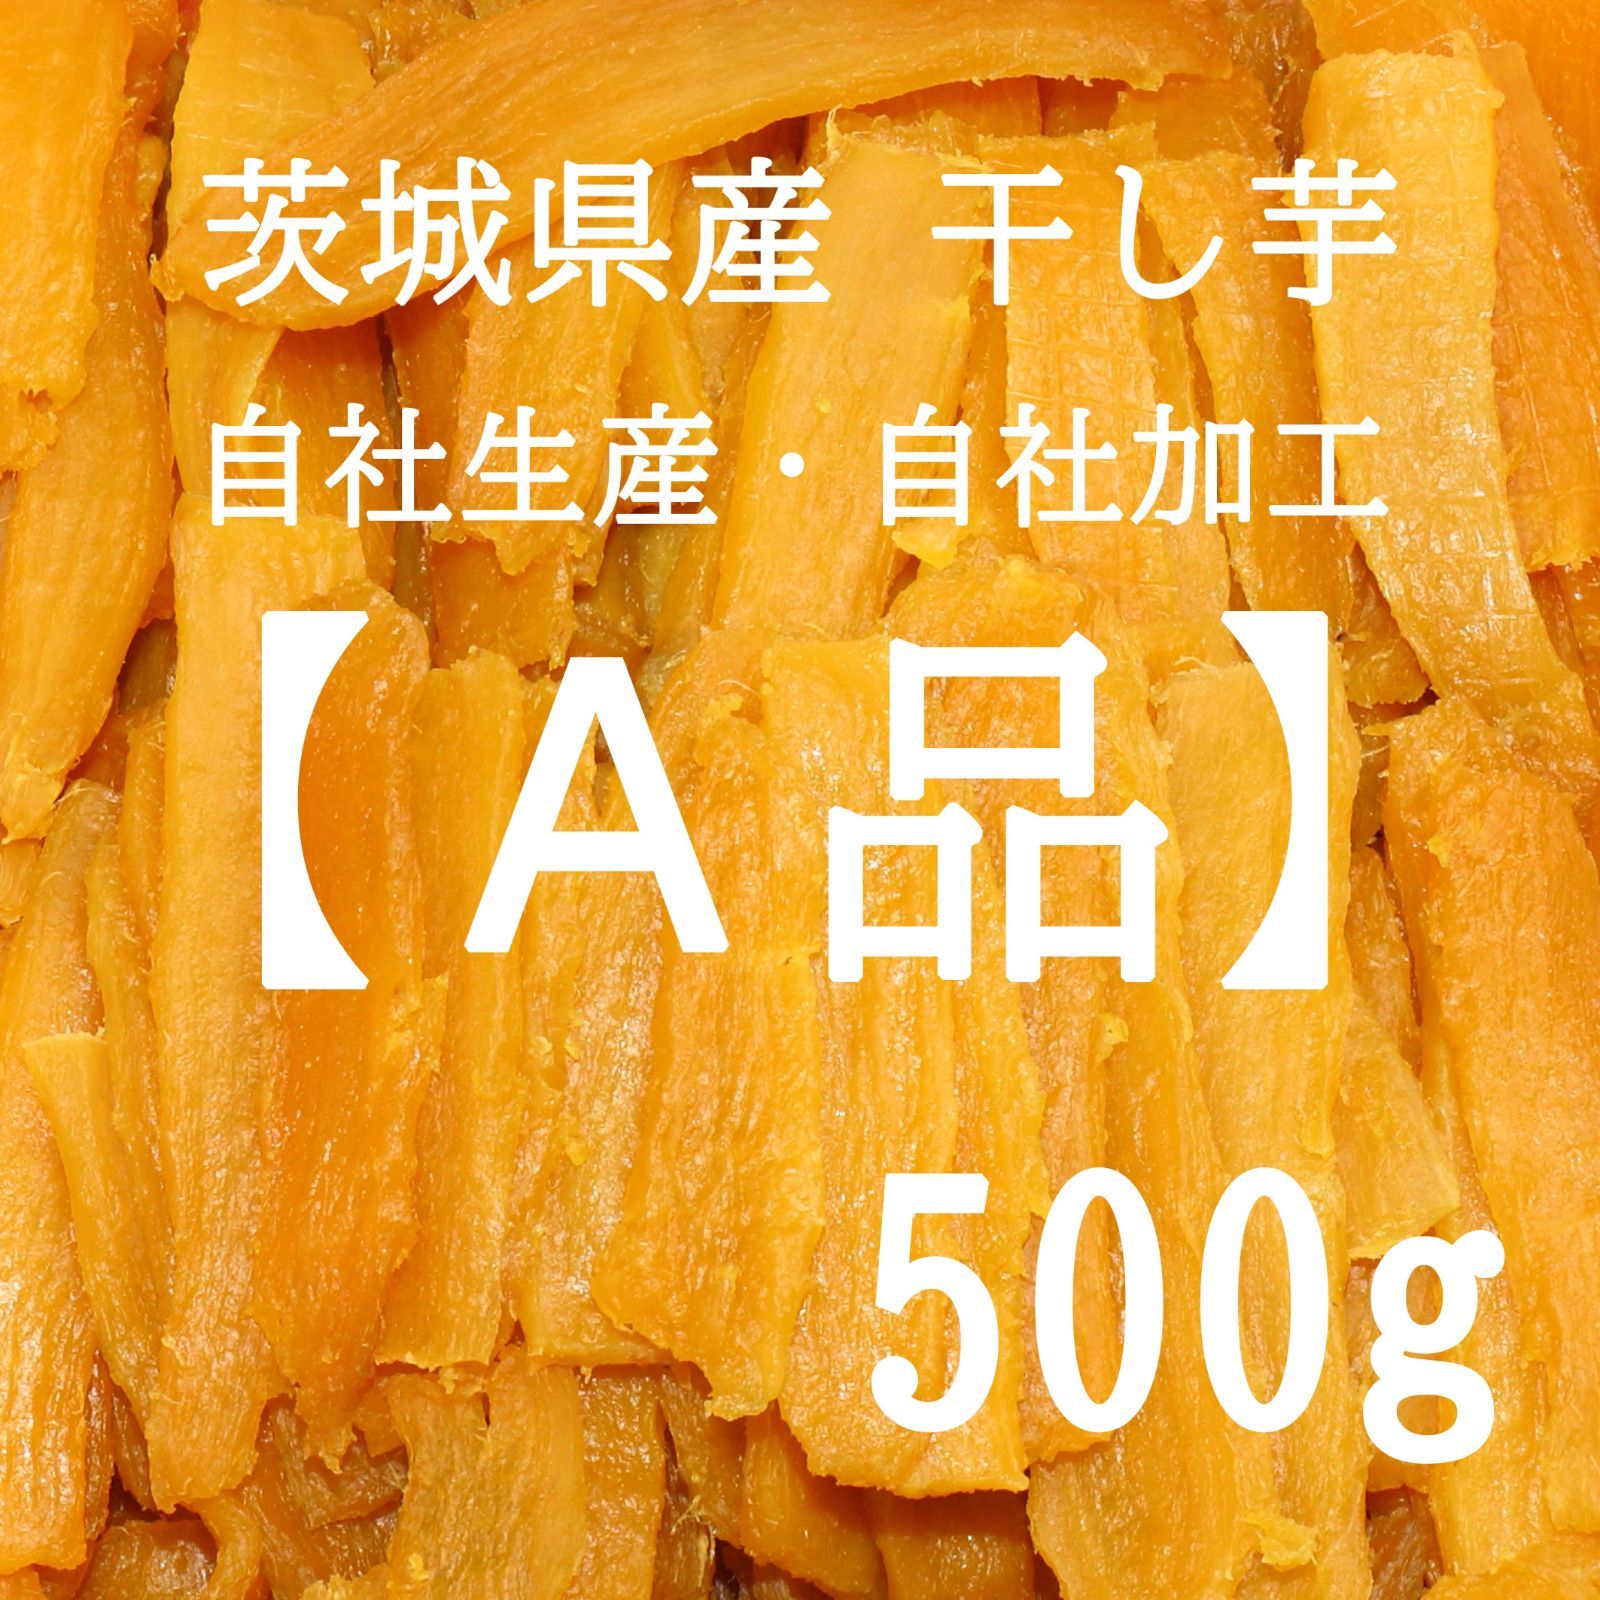 【数量限定品】茨城県産干し芋、A品 お試し500g-0